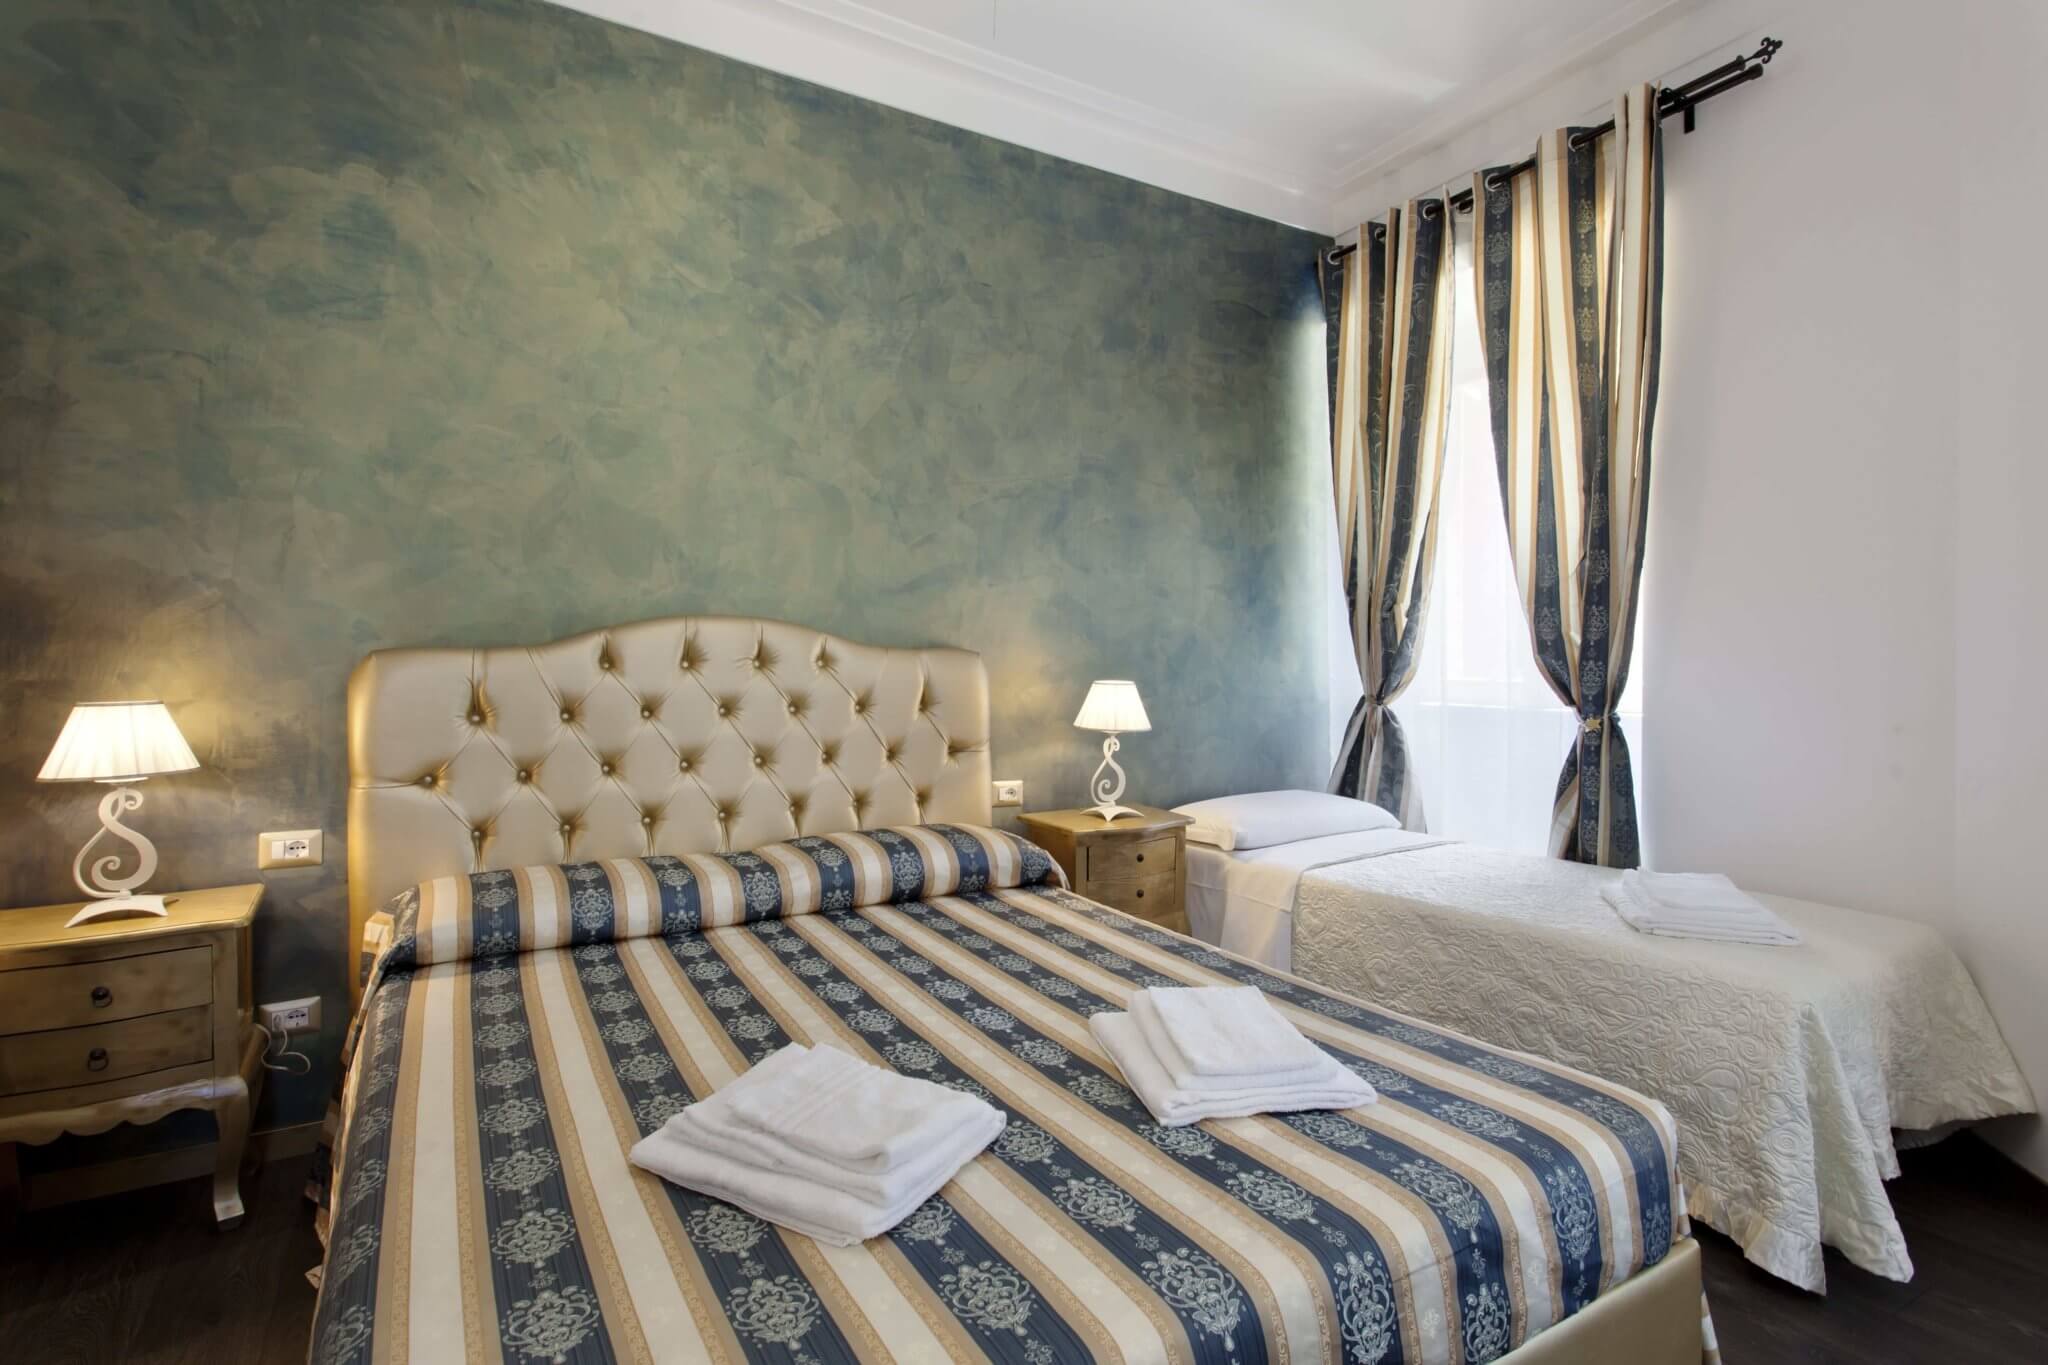 secret rHome - Luxury Inn in Rome